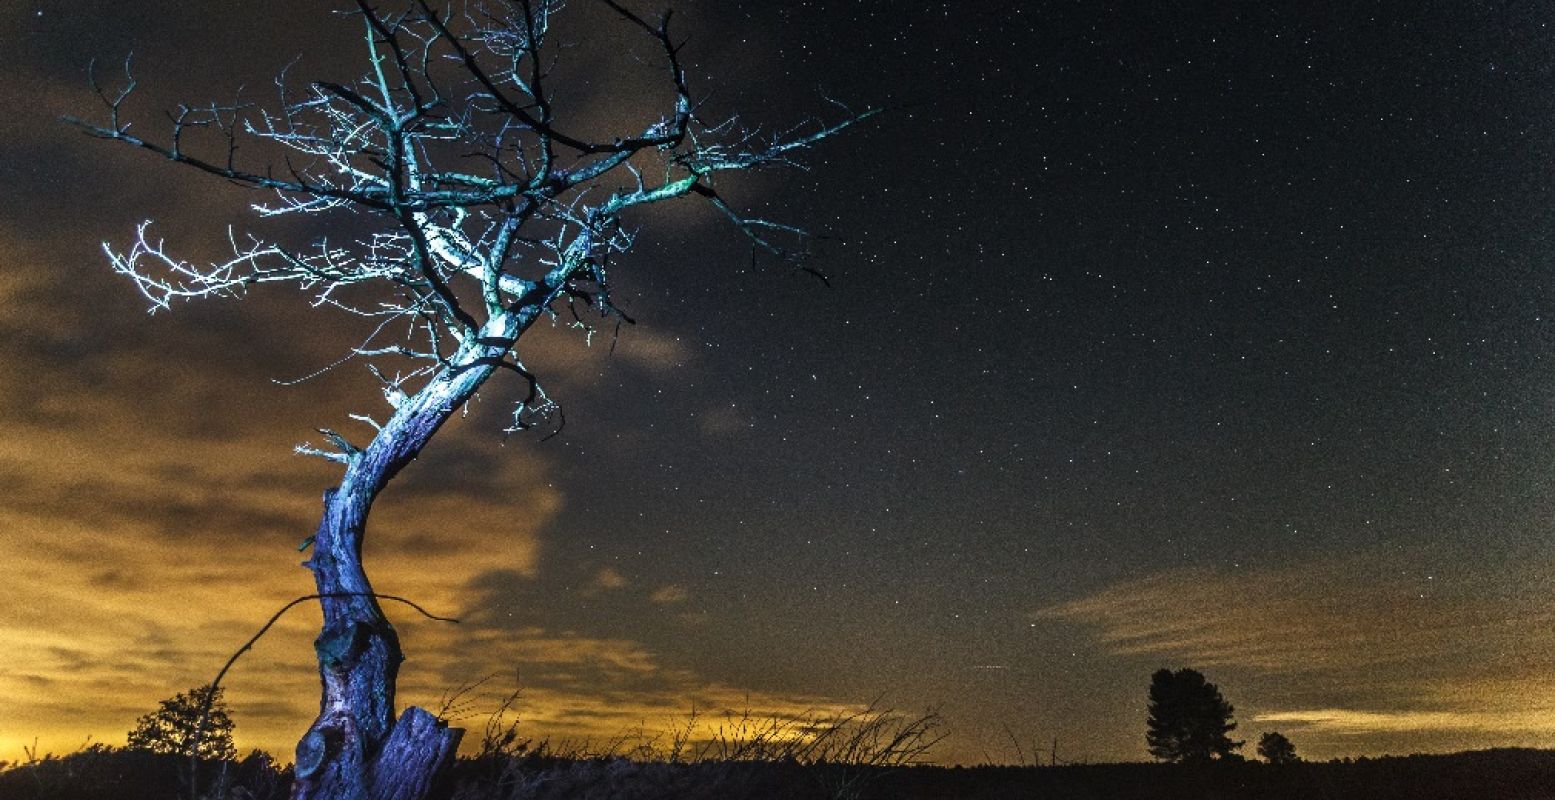 Dode boom op het Kootwijkerzand in nachtelijke sterrenhemel. Foto: Johan van der Wielen